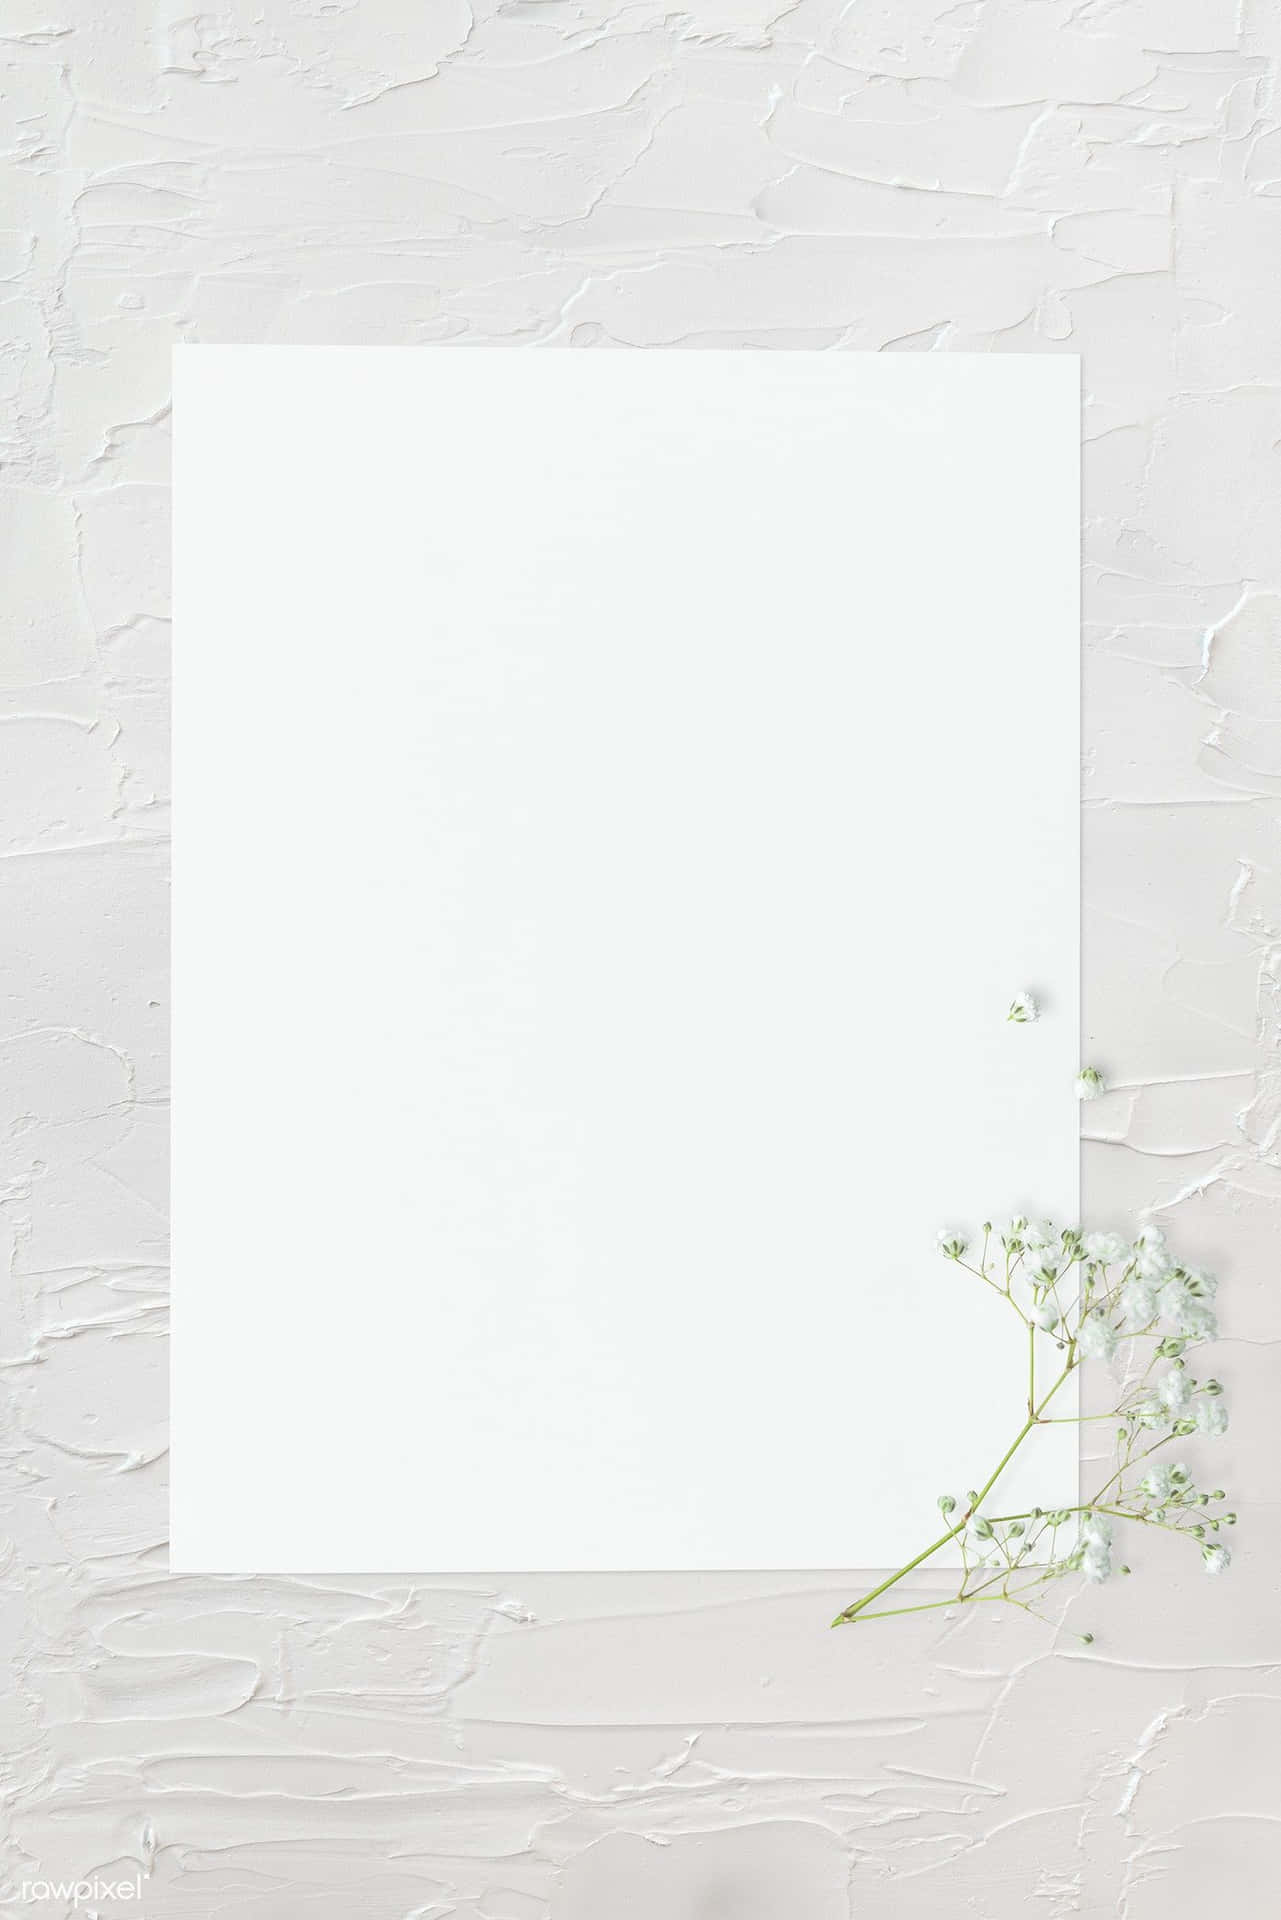 Velvet White, Plain and Simple